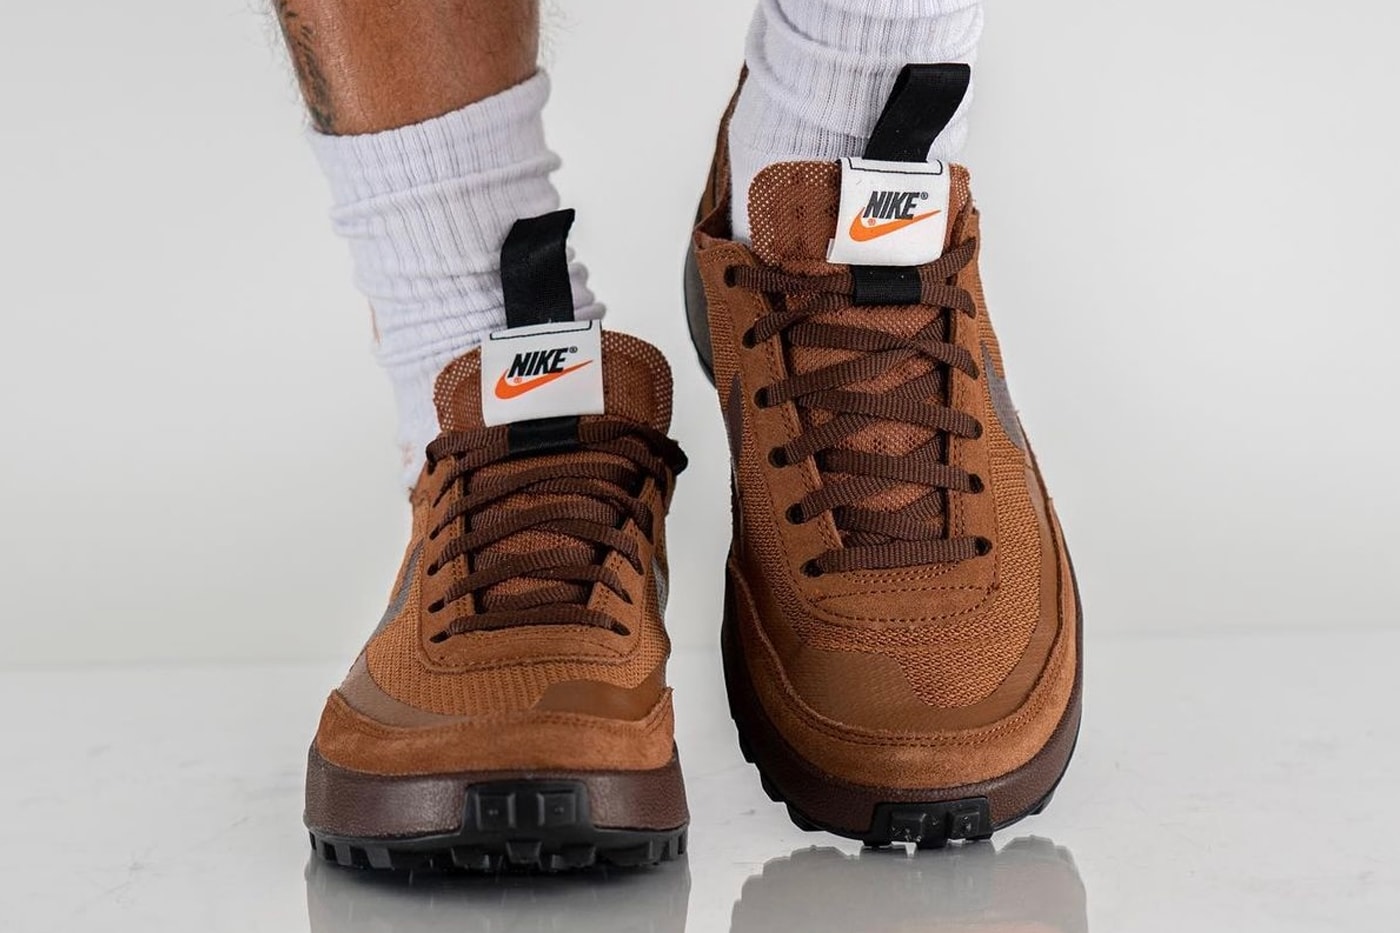 トムサックス x ナイキクラフト ジェネラル パーパス シューズ ブラウンの発売情報が解禁 Tom Sachs NikeCraft General Purpose Shoe Brown On-Foot Look Release Info DA6672-201 Date Buy Price 